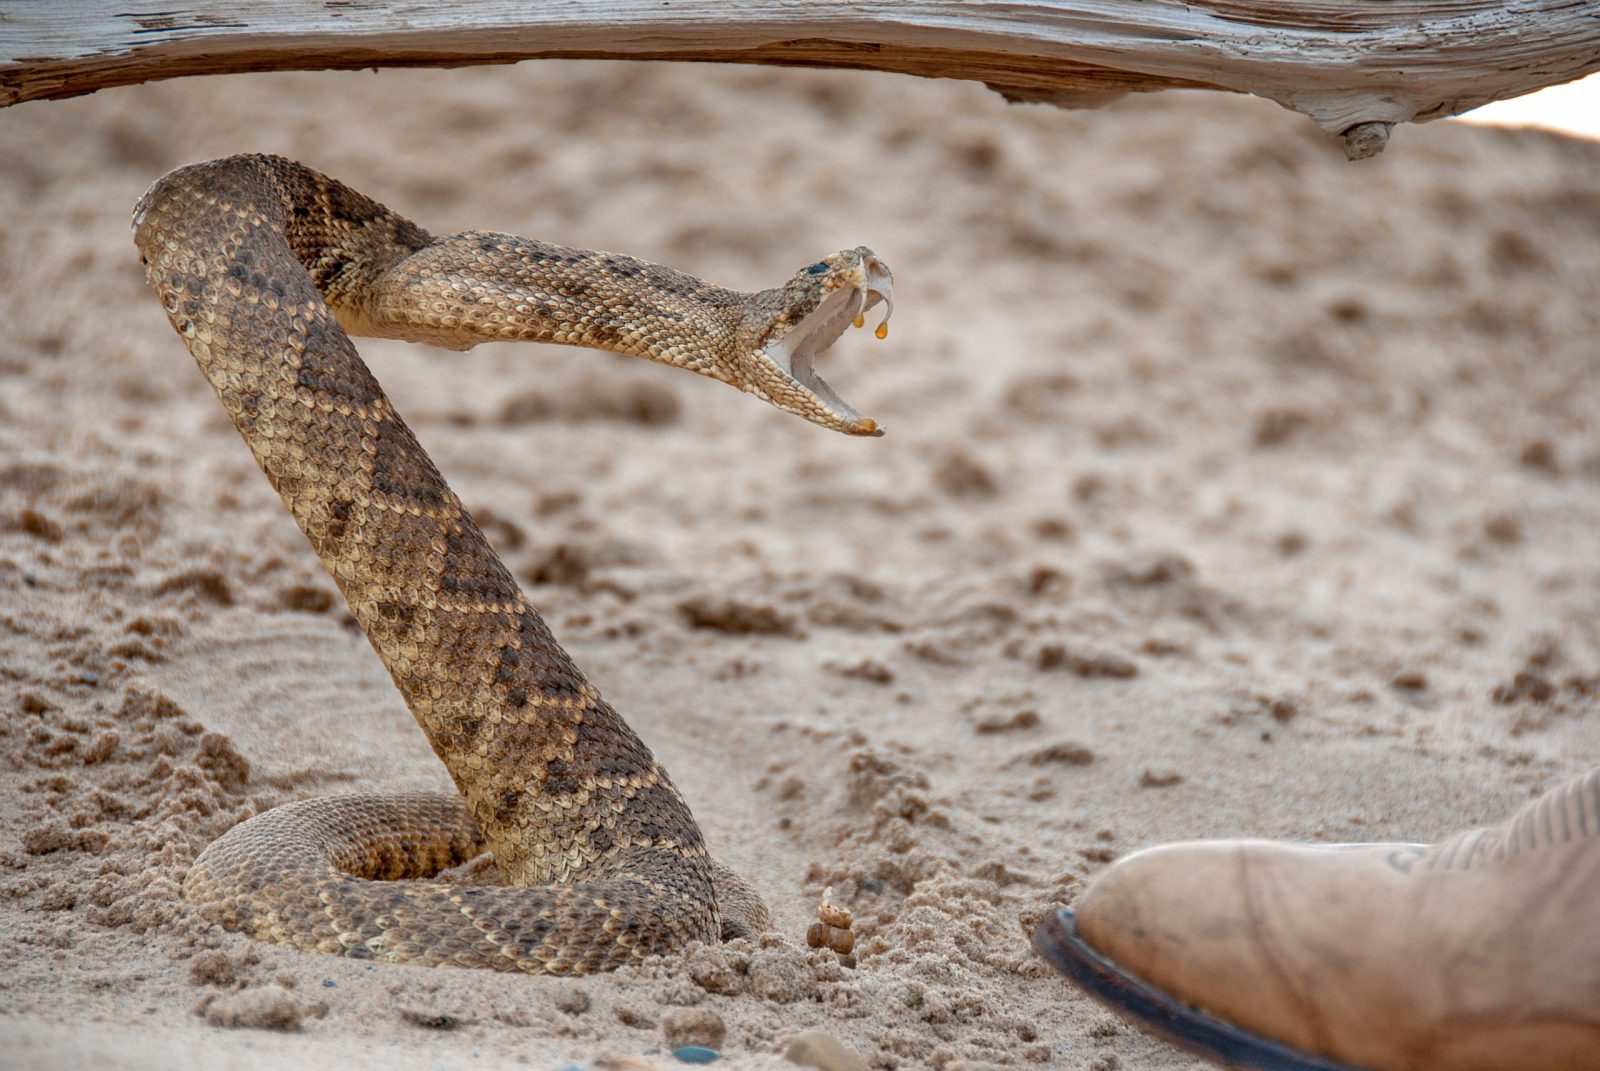 Coiled rattlesnake in sand